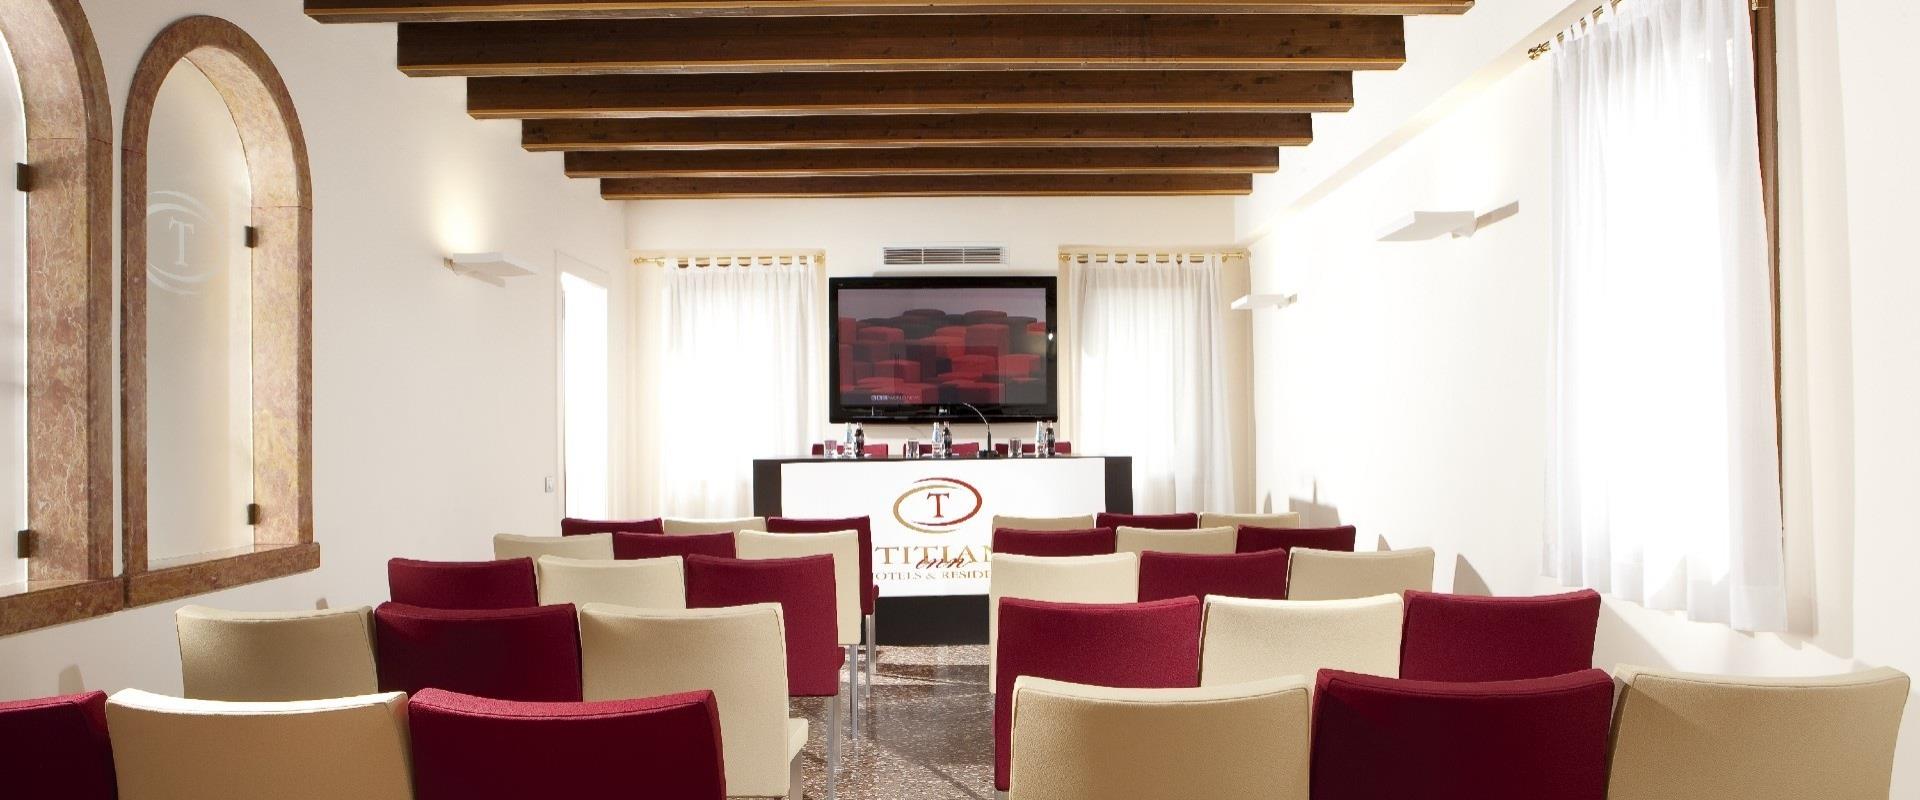 Organizza il tuo meeting a Treviso Silea con Titian Inn Hotel: scopri i dettagli delle nostre sale meeting!